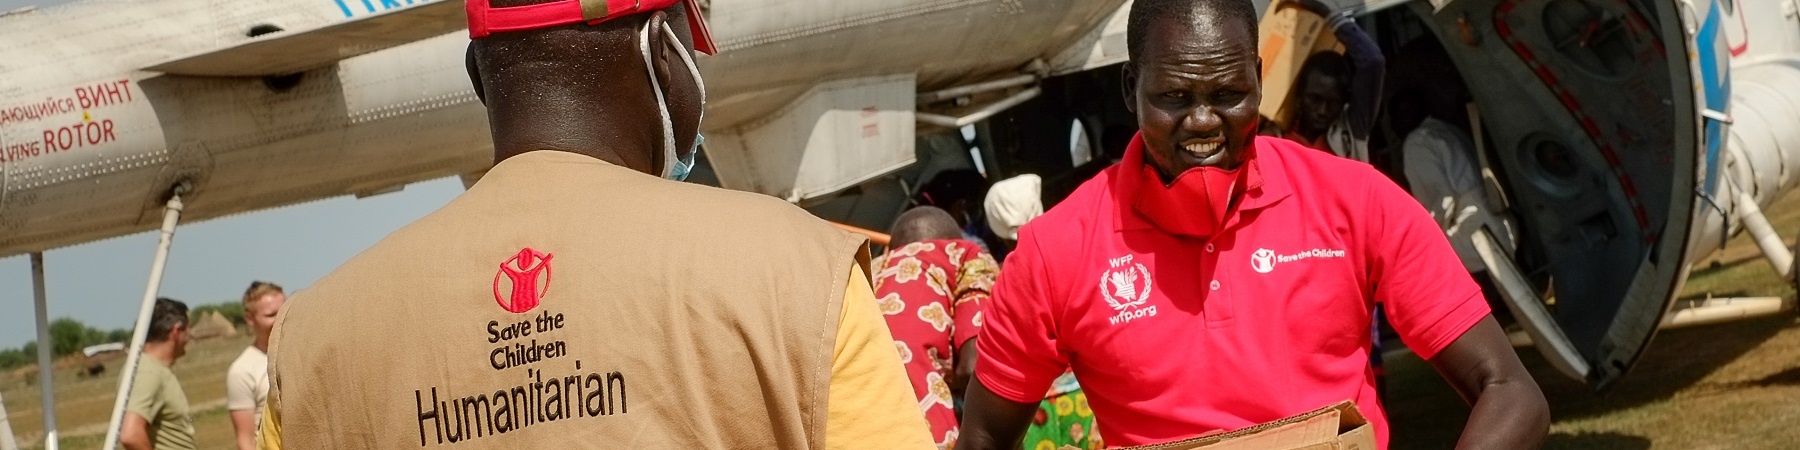 Operatori save the children trasportano in mano scatole di aiuti umanitari appena arrivati da un aereo. Un operatore è di spalle e l altro è di fronte.